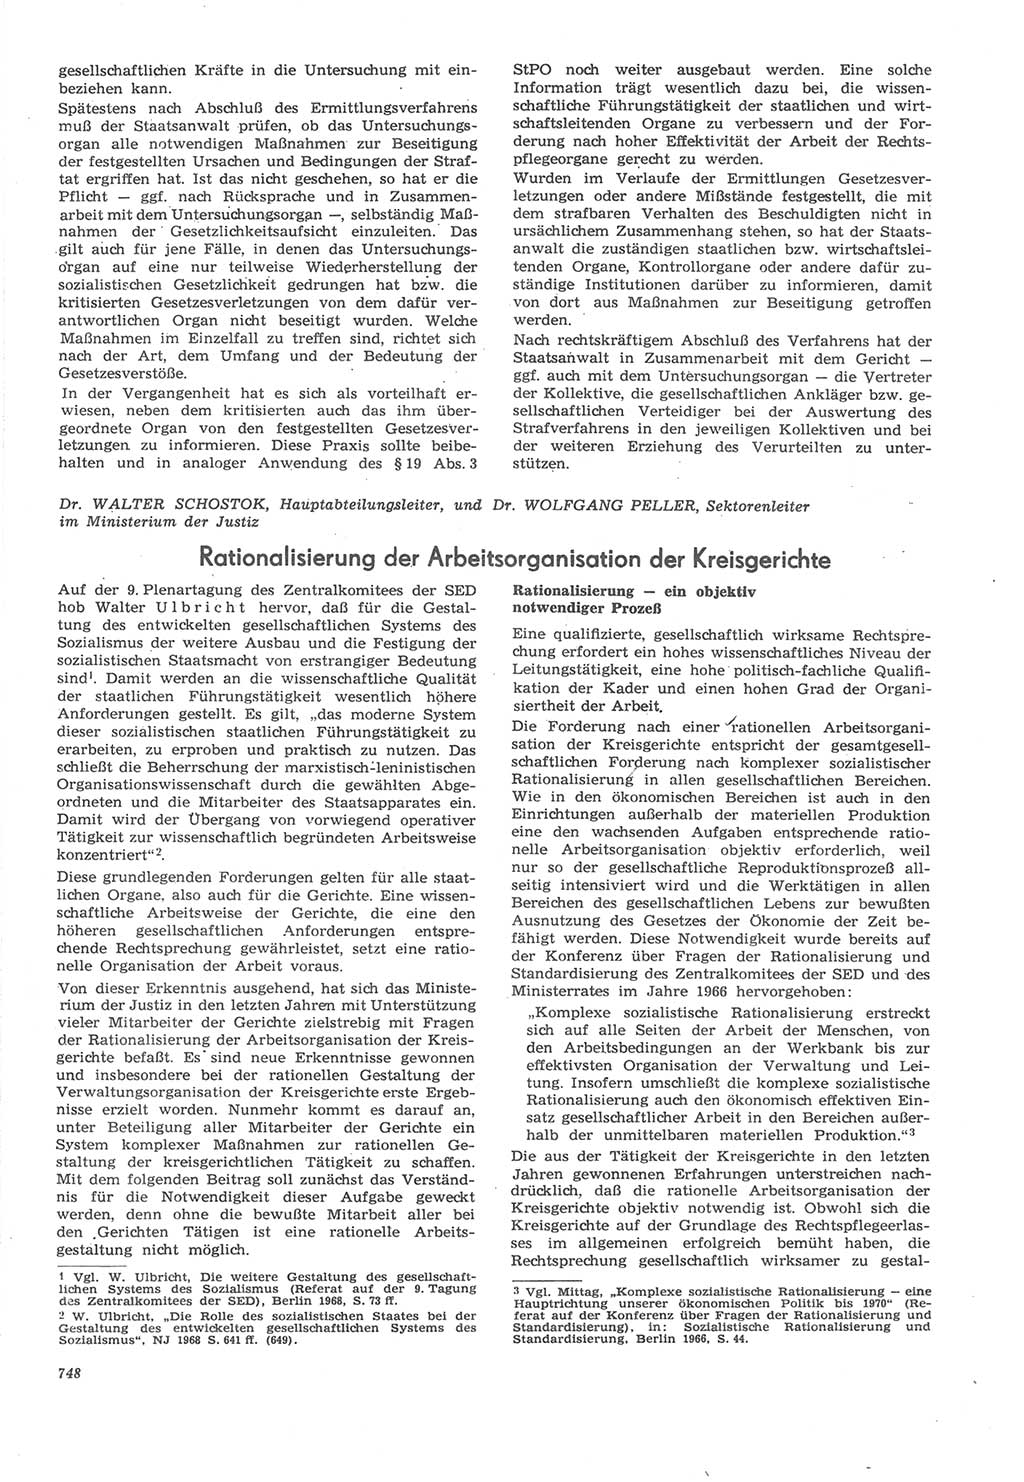 Neue Justiz (NJ), Zeitschrift für Recht und Rechtswissenschaft [Deutsche Demokratische Republik (DDR)], 22. Jahrgang 1968, Seite 748 (NJ DDR 1968, S. 748)